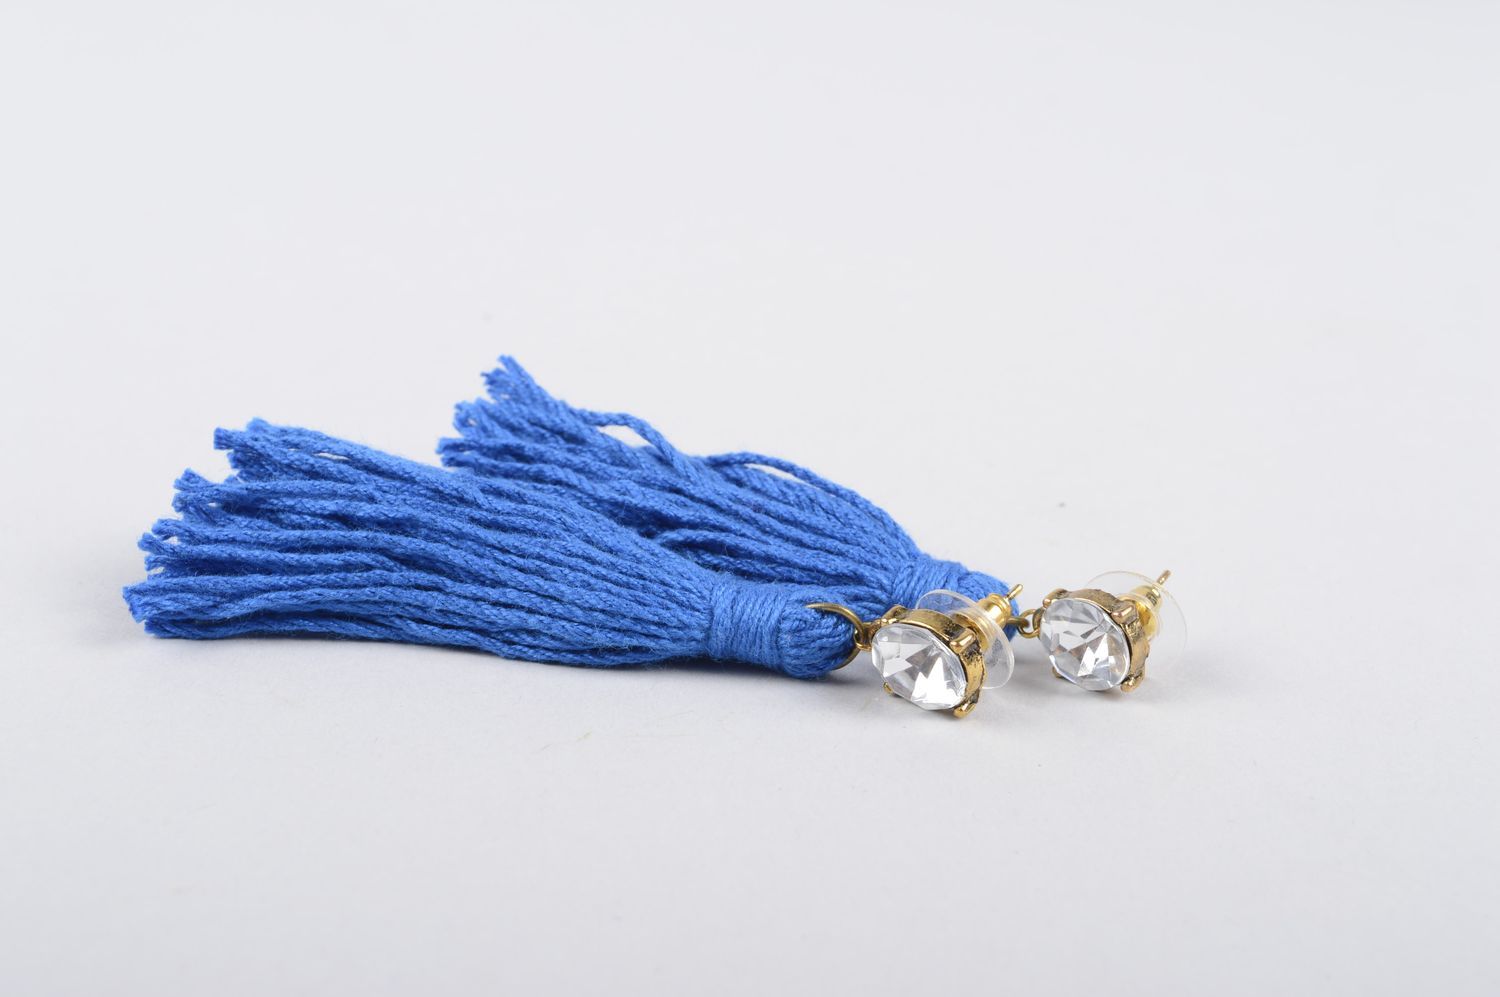 Серьги ручной работы серьги с бахромой синие серьги из ниток хлопковых фото 4